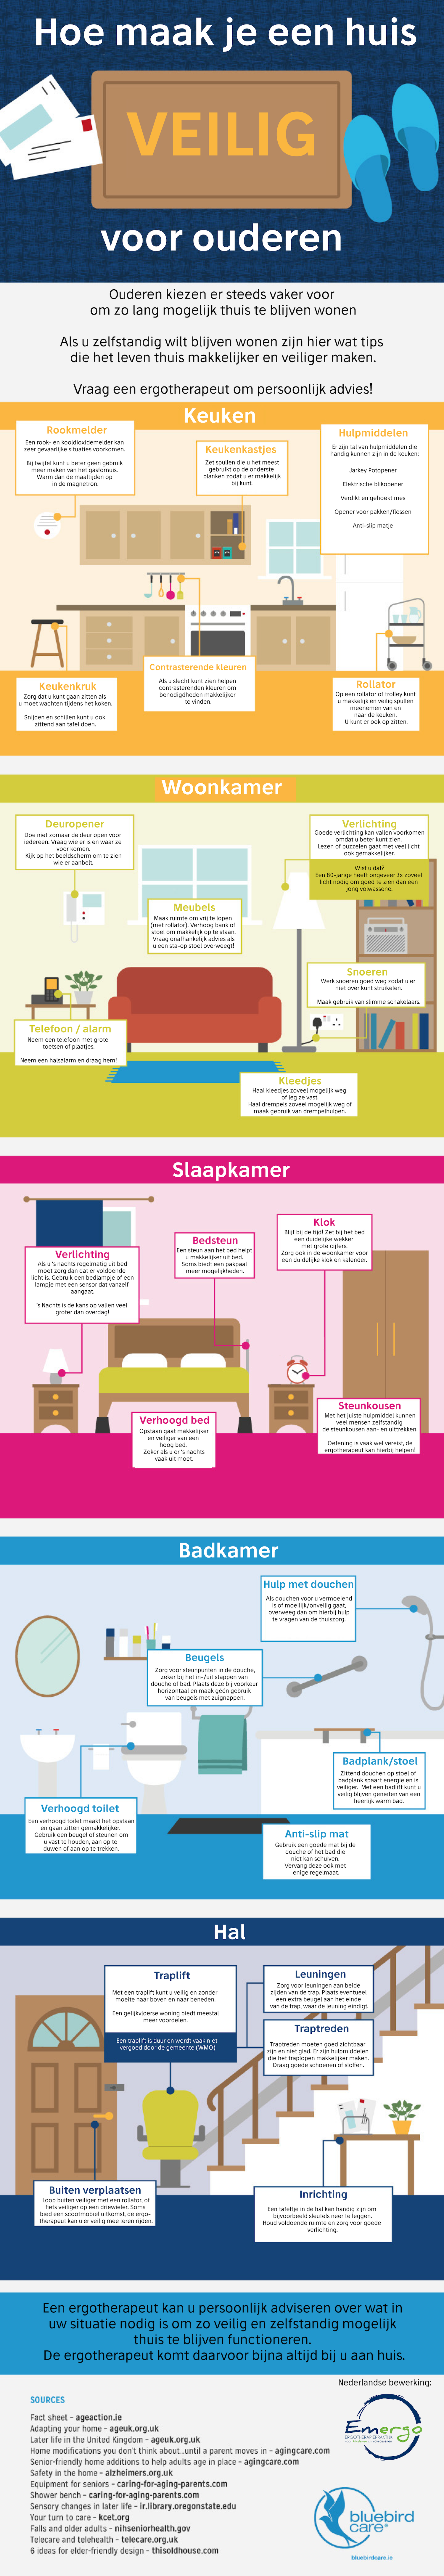 Infographic: Hoe maak je een huis veilig voor ouderen